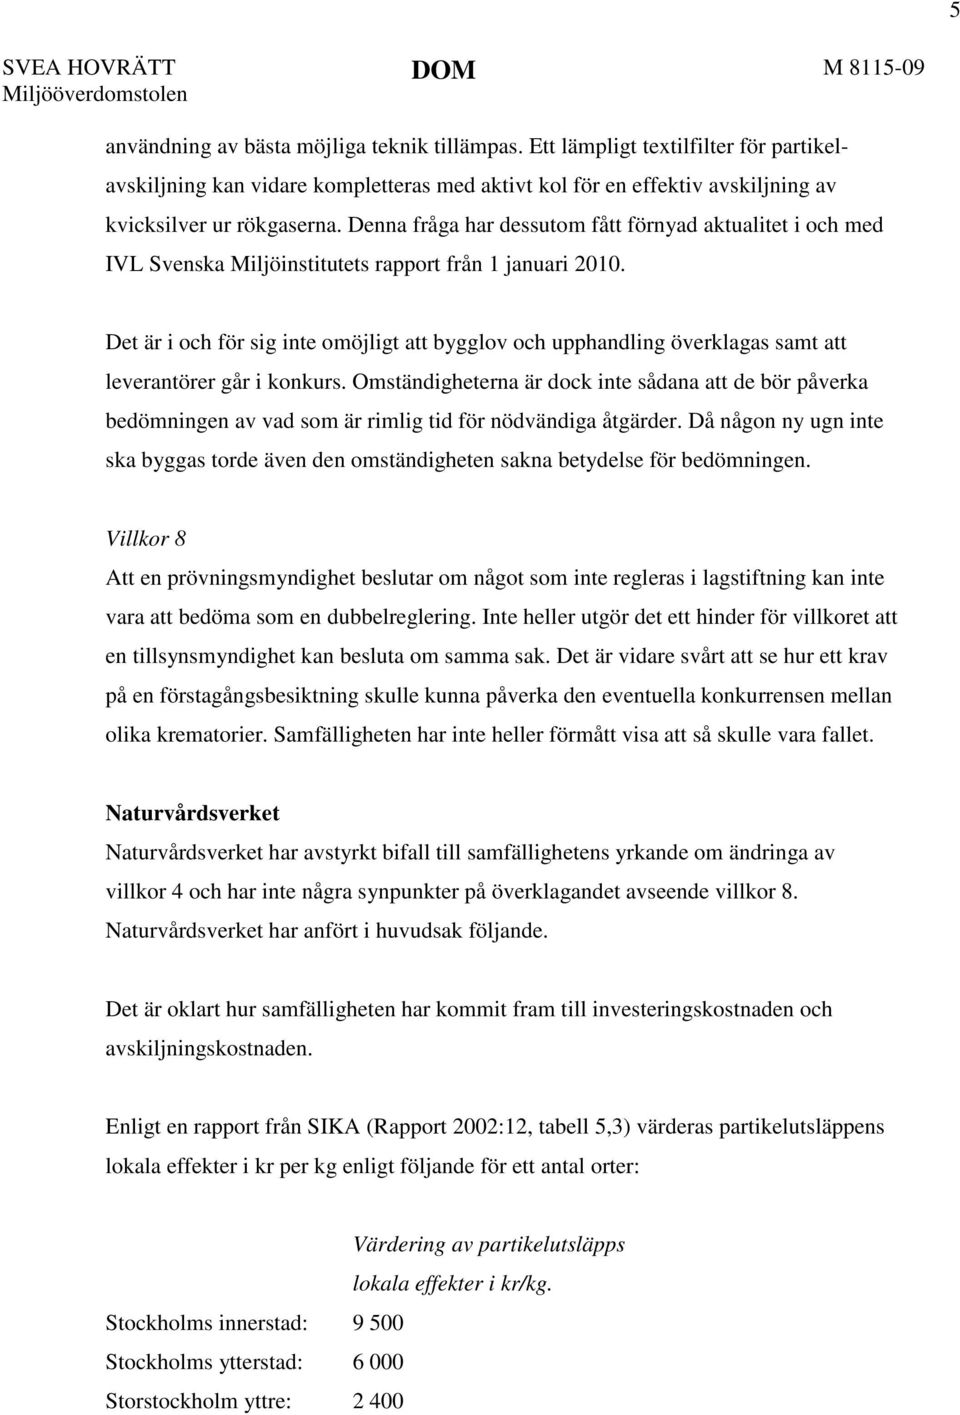 Denna fråga har dessutom fått förnyad aktualitet i och med IVL Svenska Miljöinstitutets rapport från 1 januari 2010.